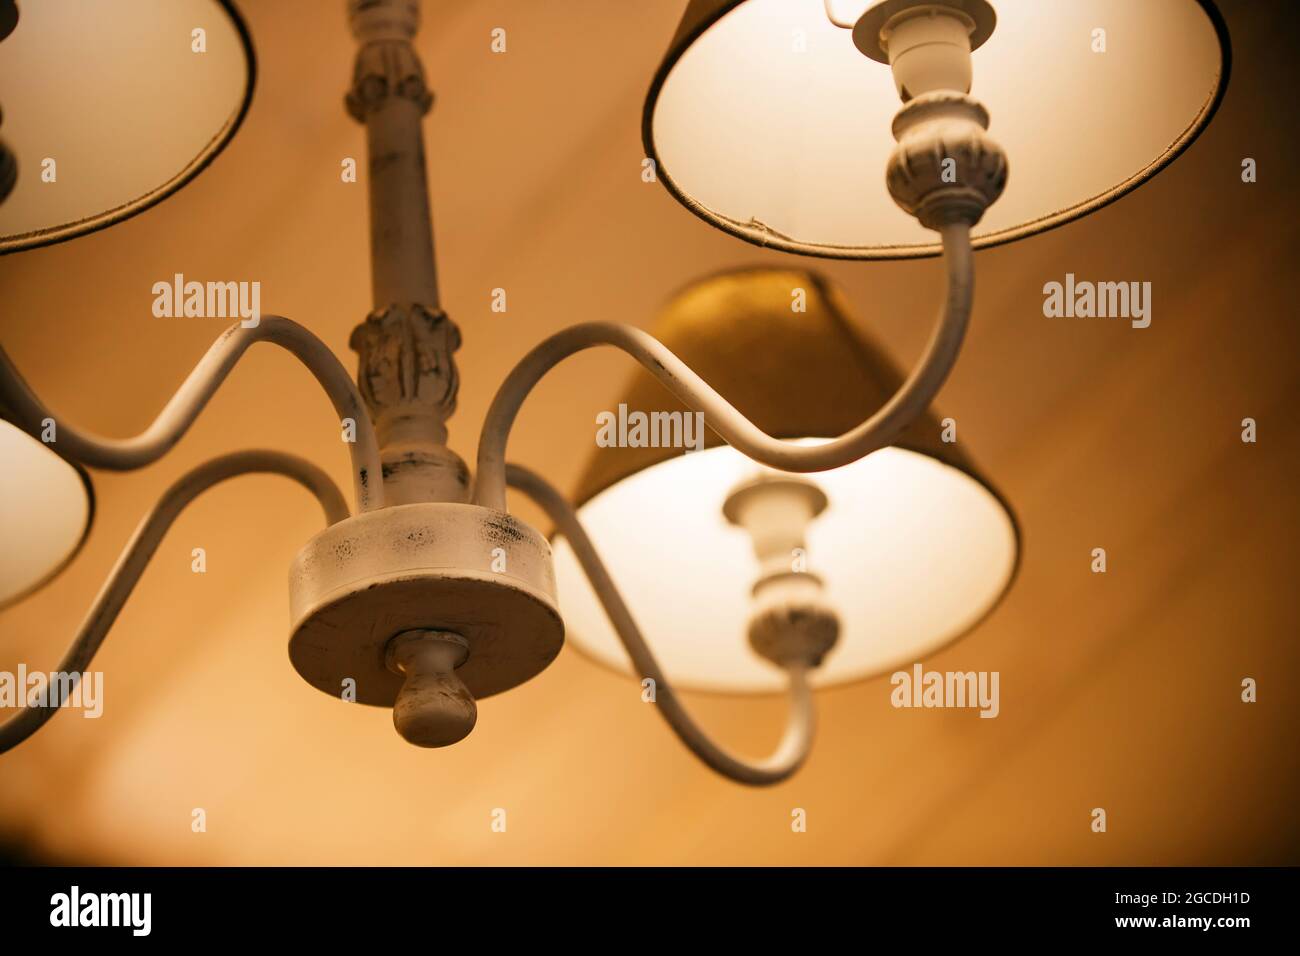 Lámparas brillantes con telas en tonos se iluminan en una elegante y hermosa araña por la noche, creando un ambiente acogedor. Un motel. Foto de stock